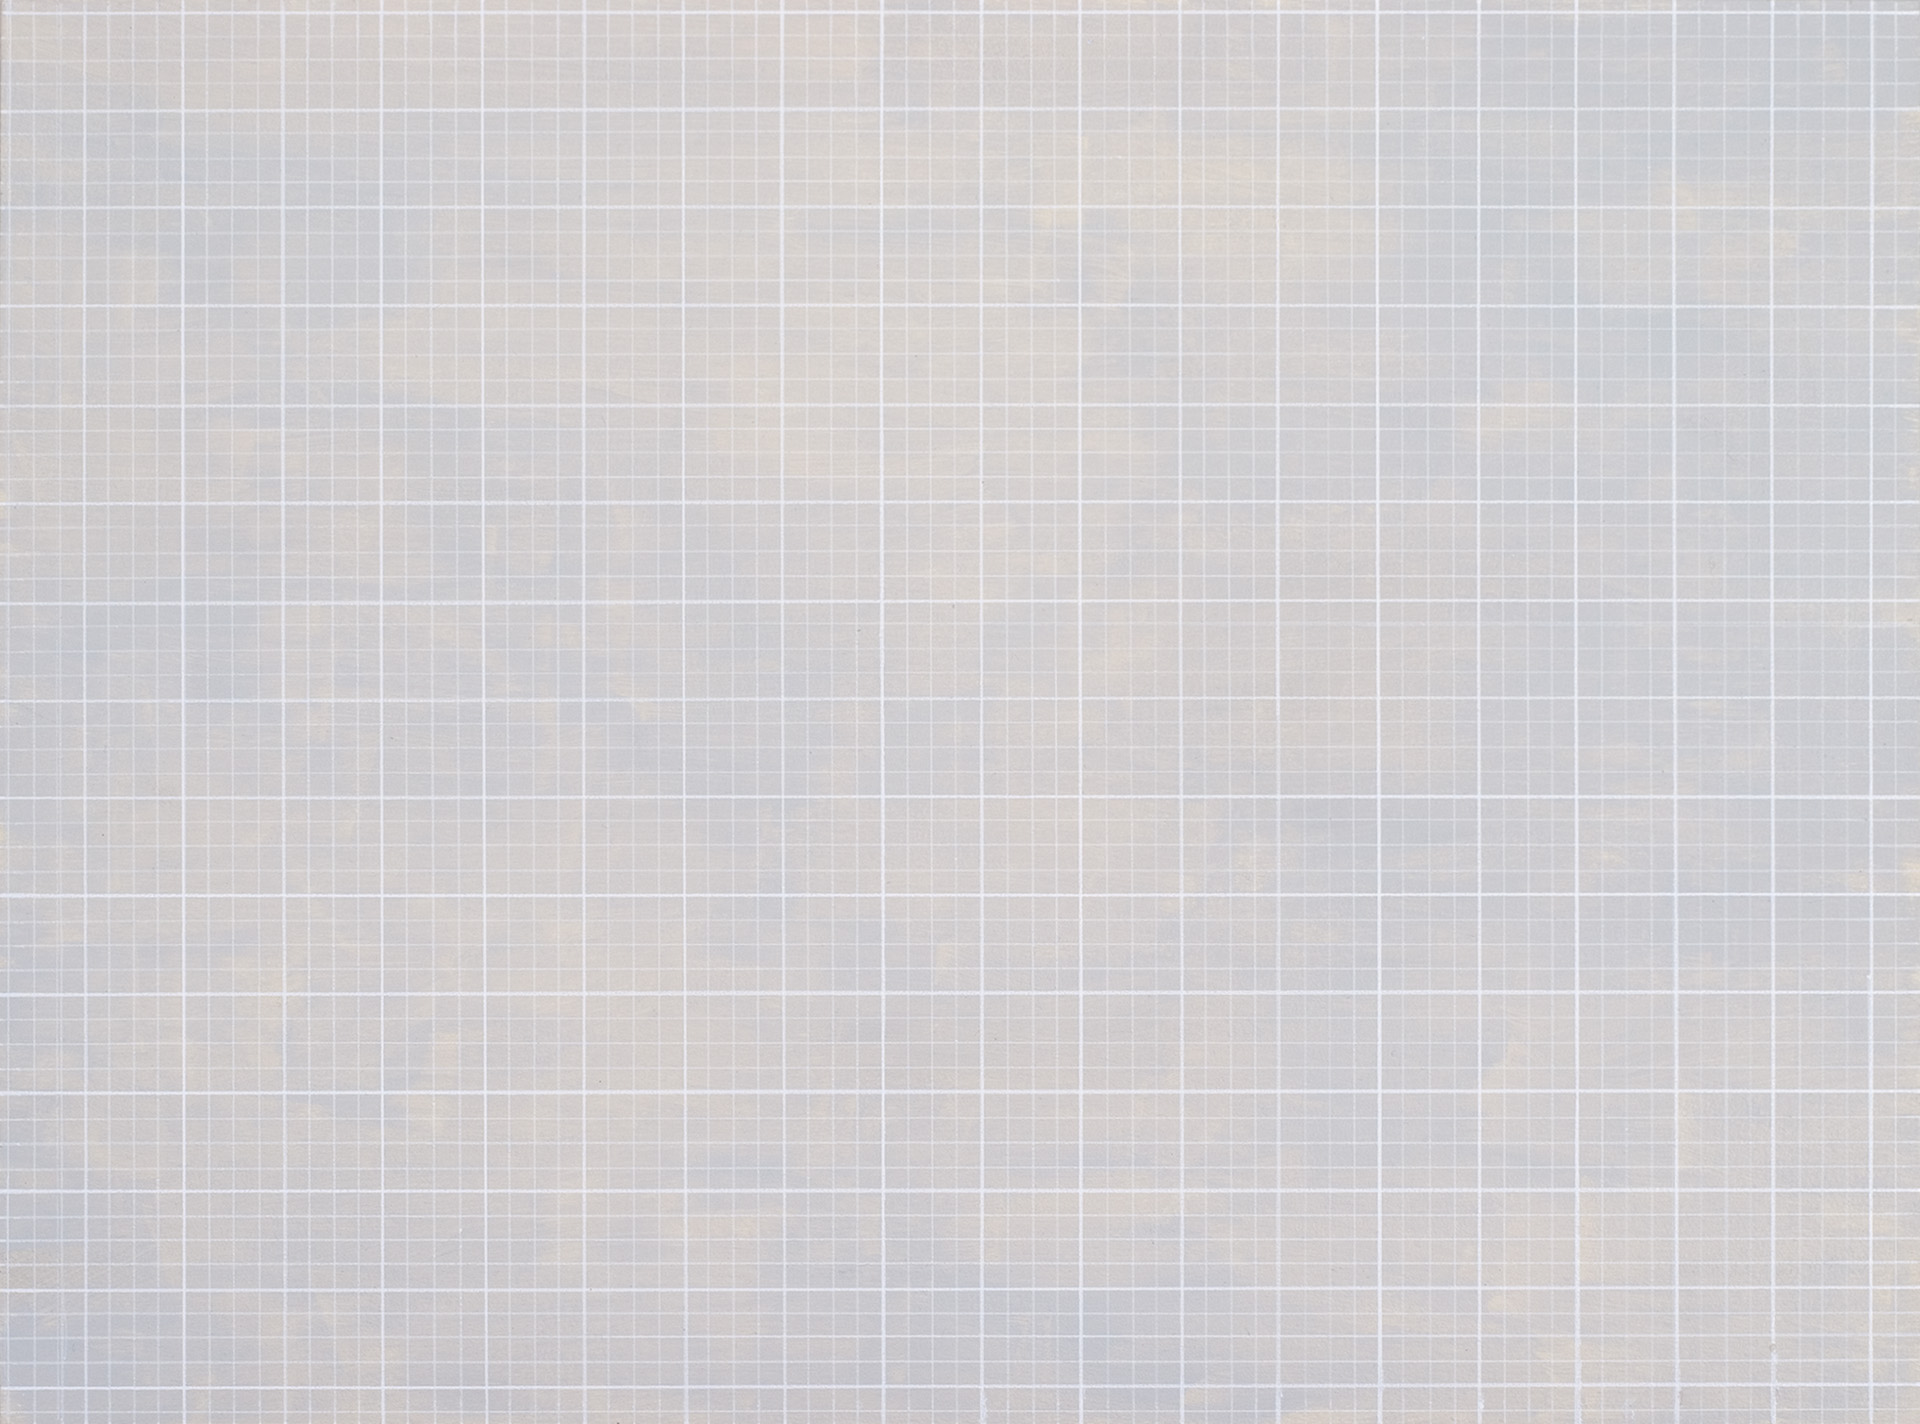  Grid 18, 2014, acrylic on board, 290 x 385mm 